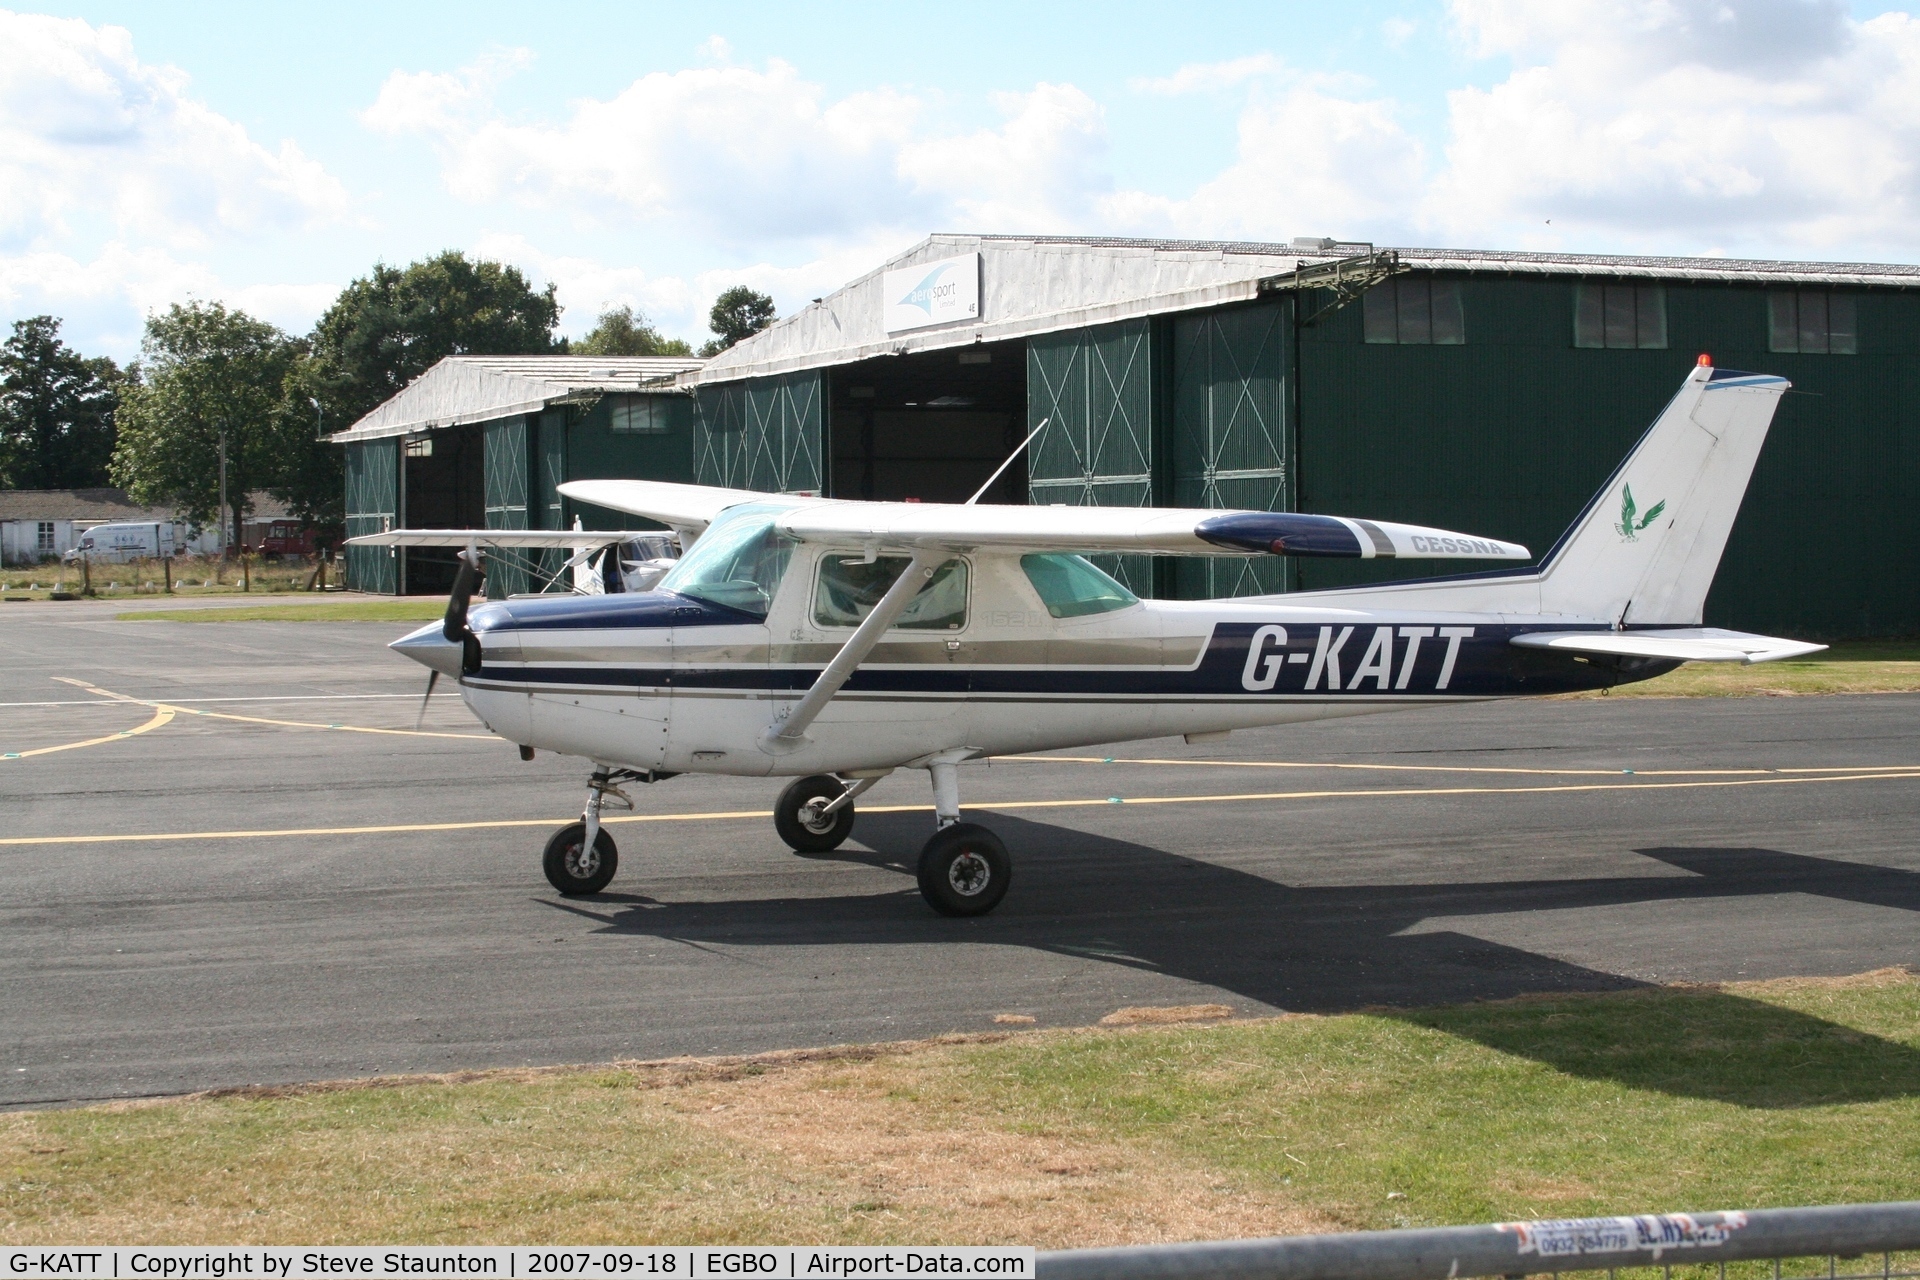 G-KATT, 1981 Cessna 152 C/N 152-85661, Taken at Halfpenny Green 18th September 2007